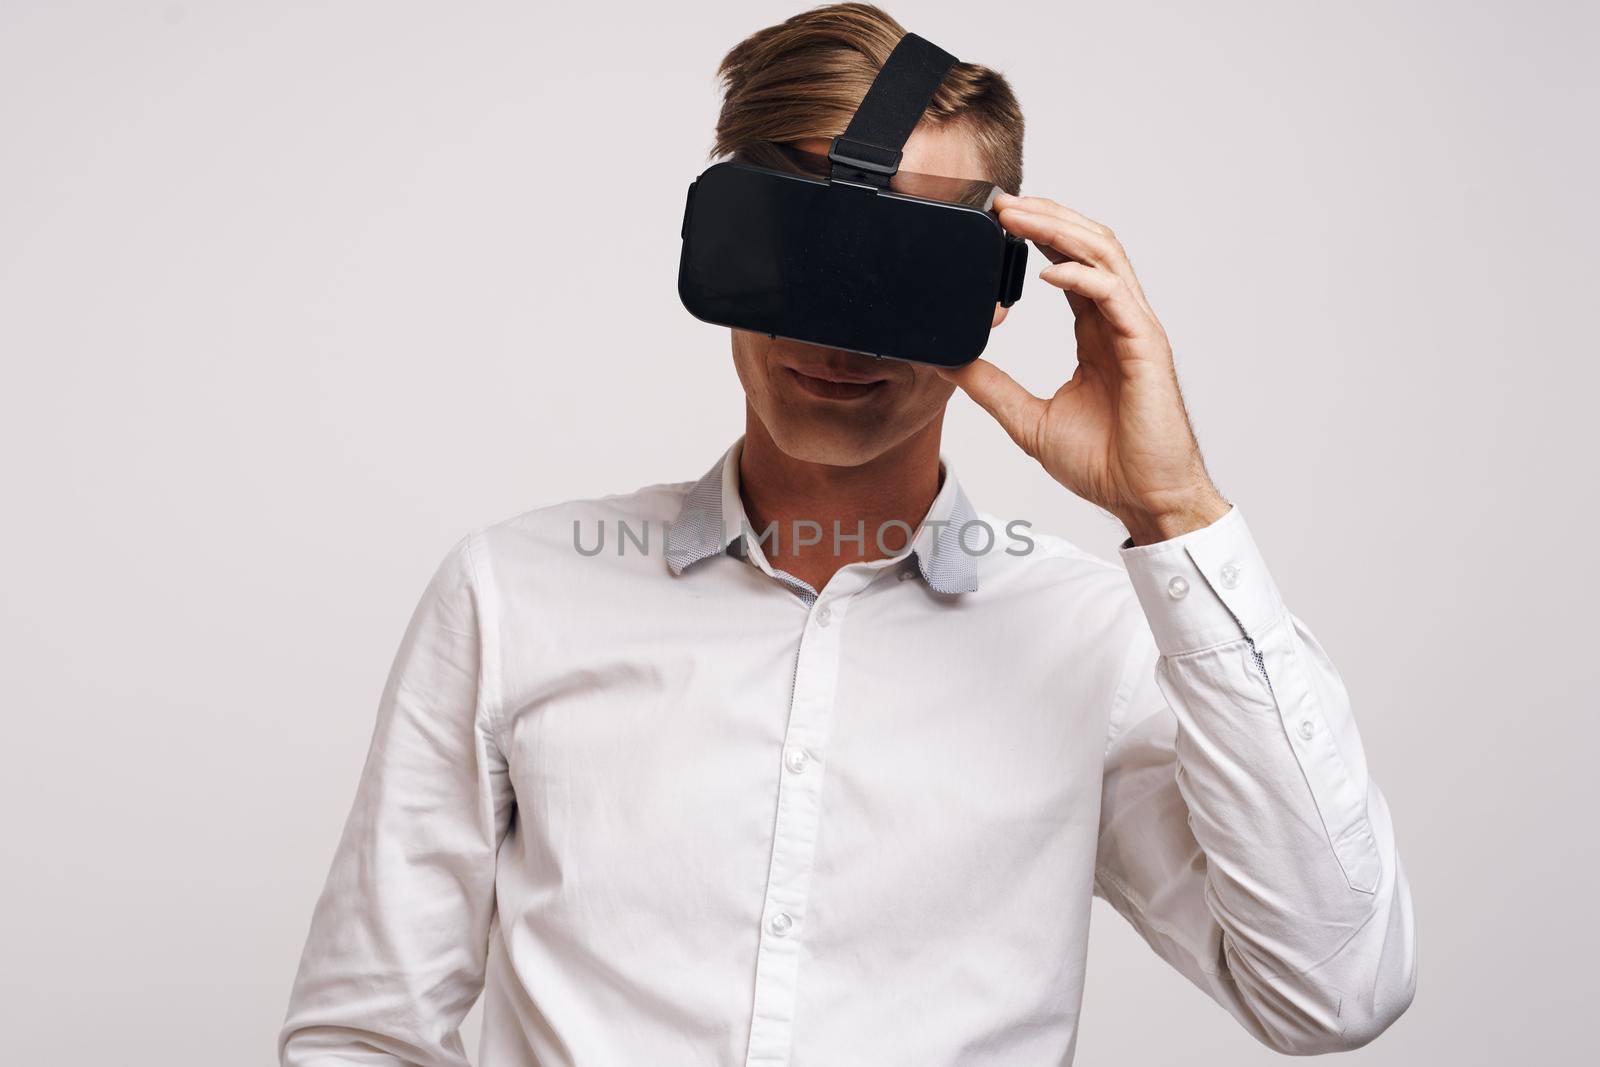 Cheerful man virtual reality glasses high-tech simulator technology studio by Vichizh